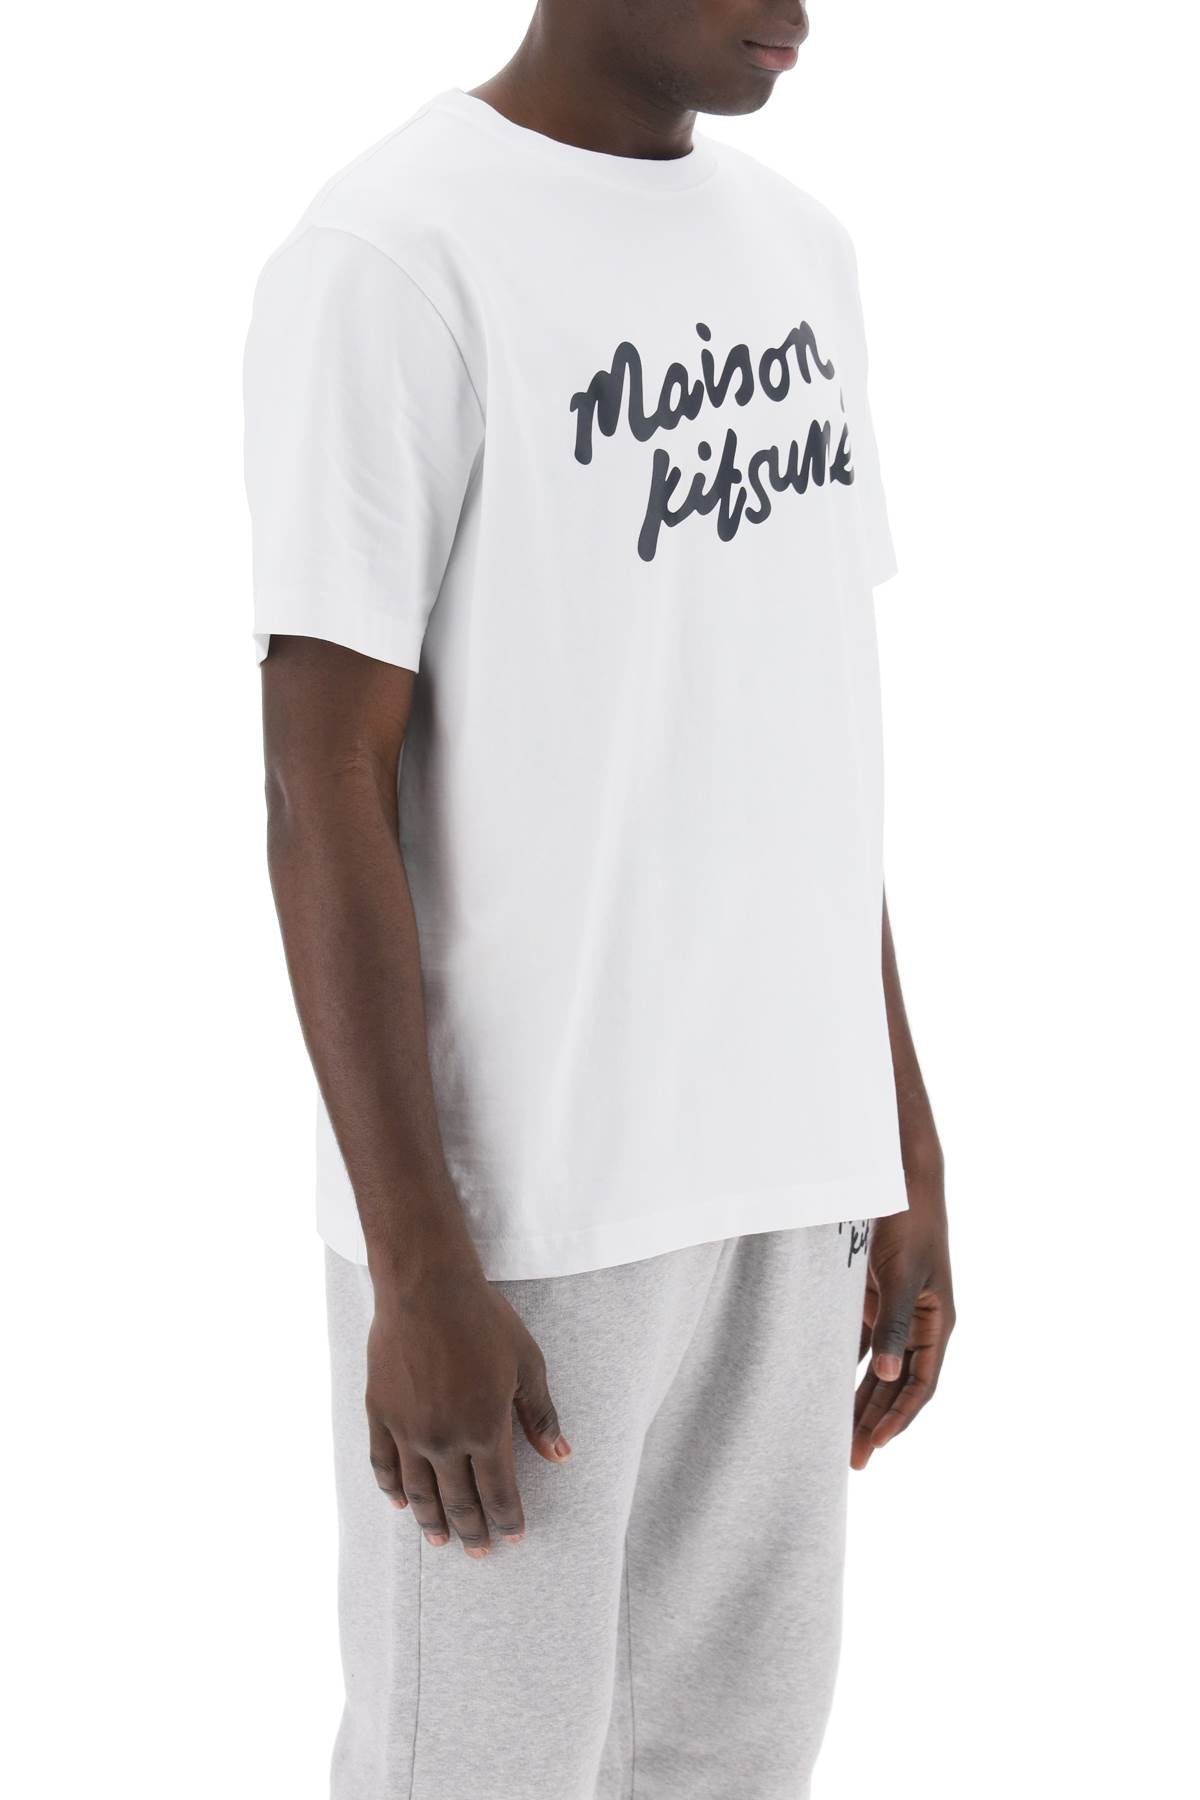 Maison kitsune t-shirt with logo in handwriting-1